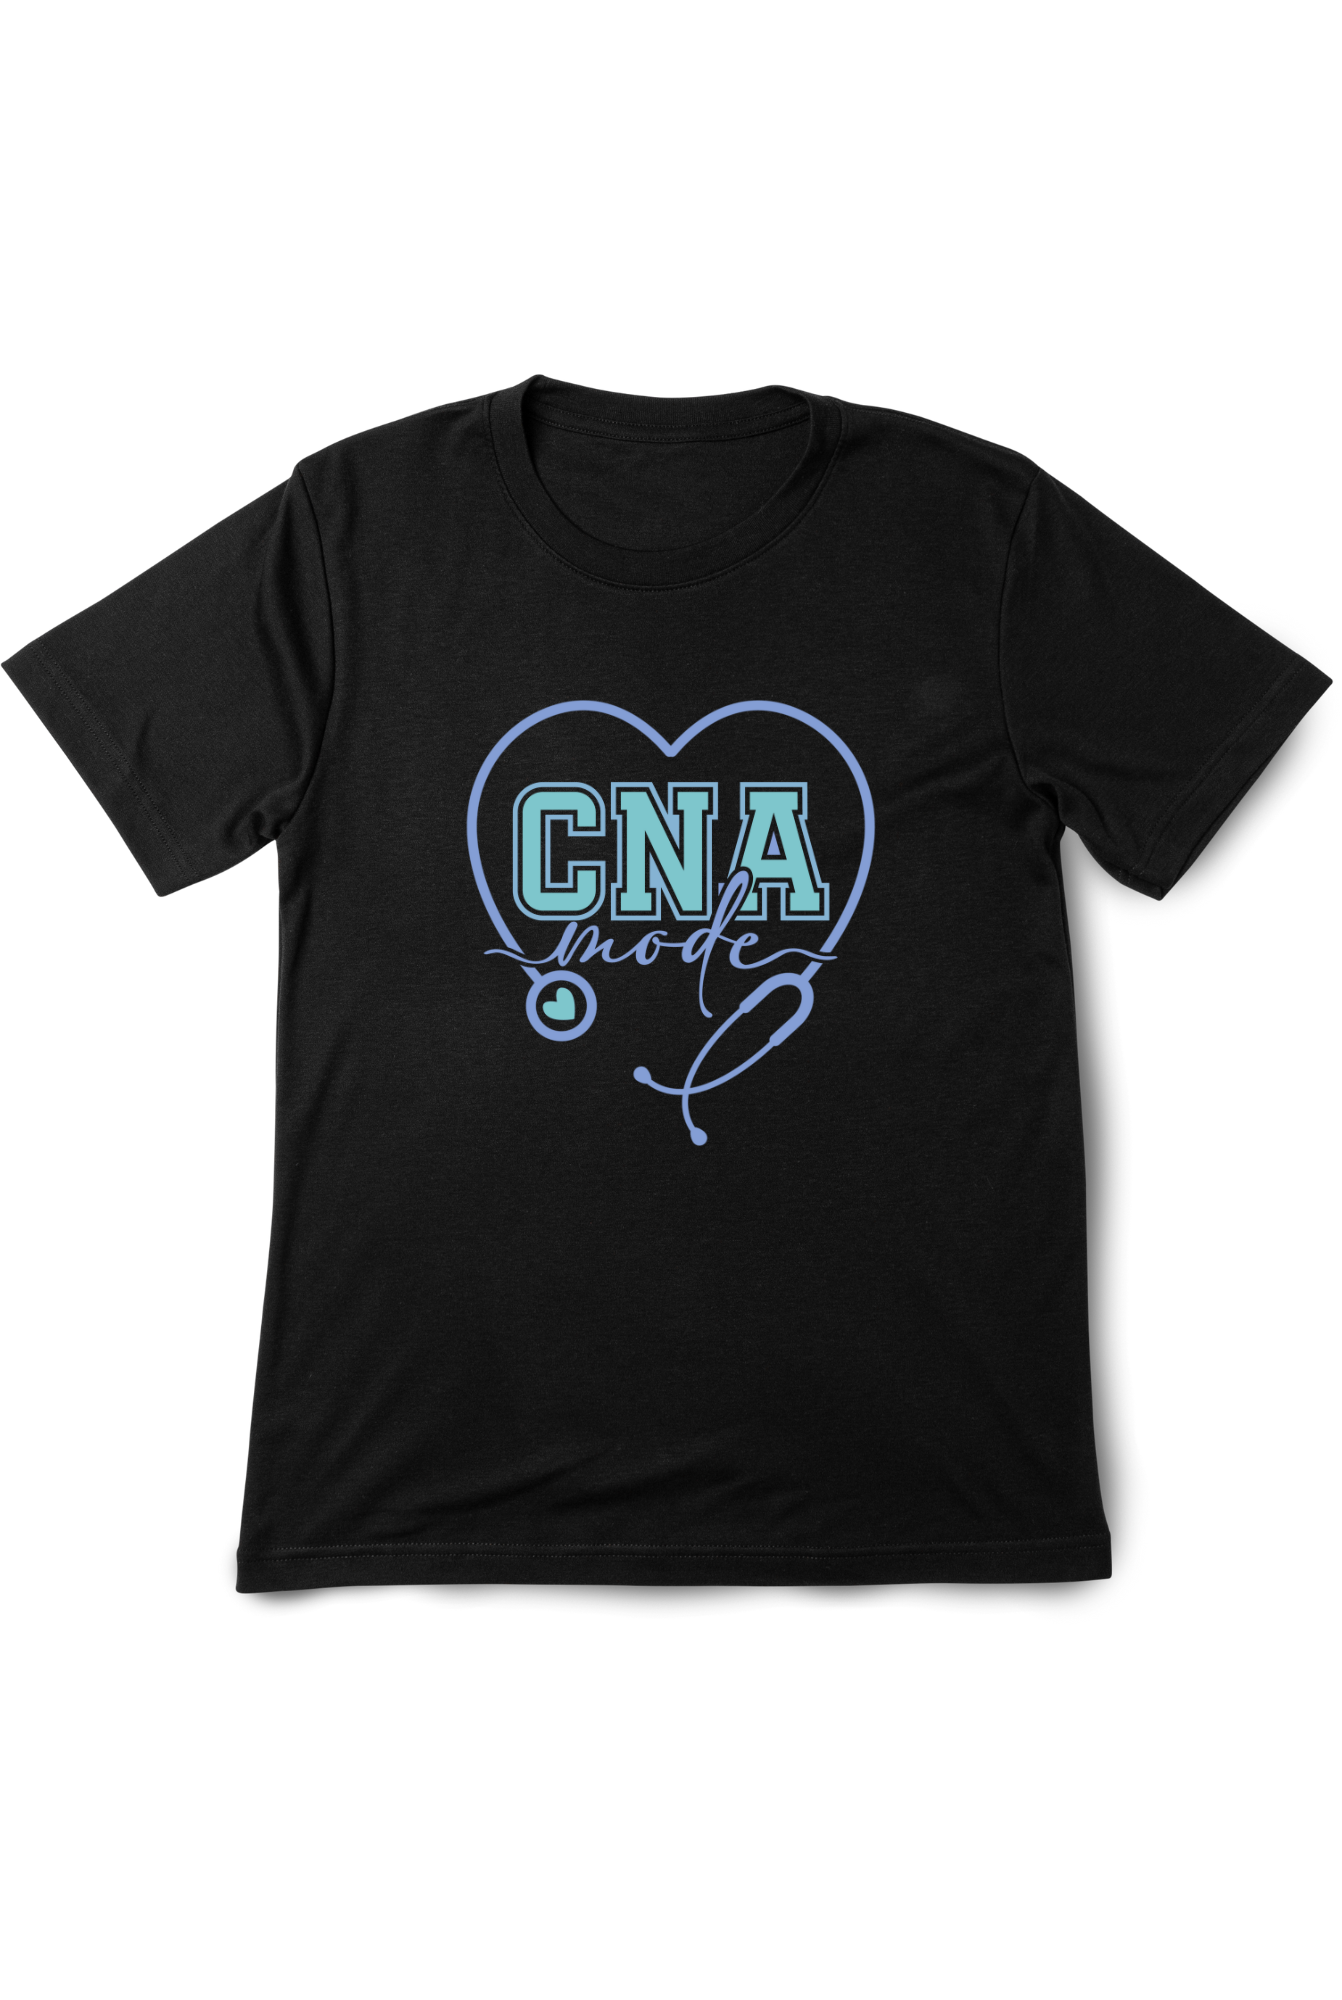 “CNA Mode” T-Shirt